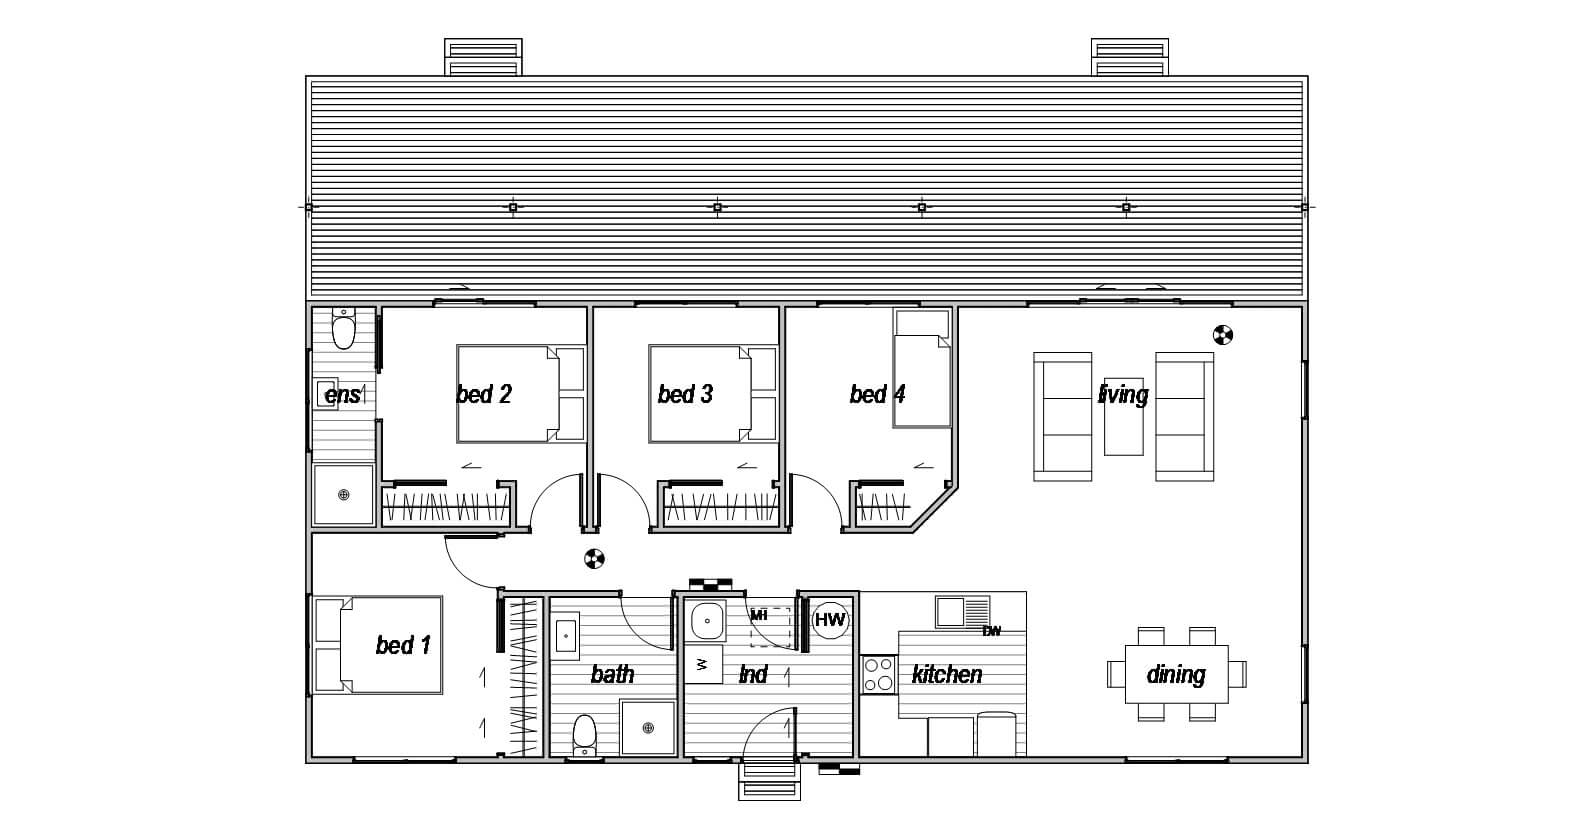 4 Bedroom floor plan design